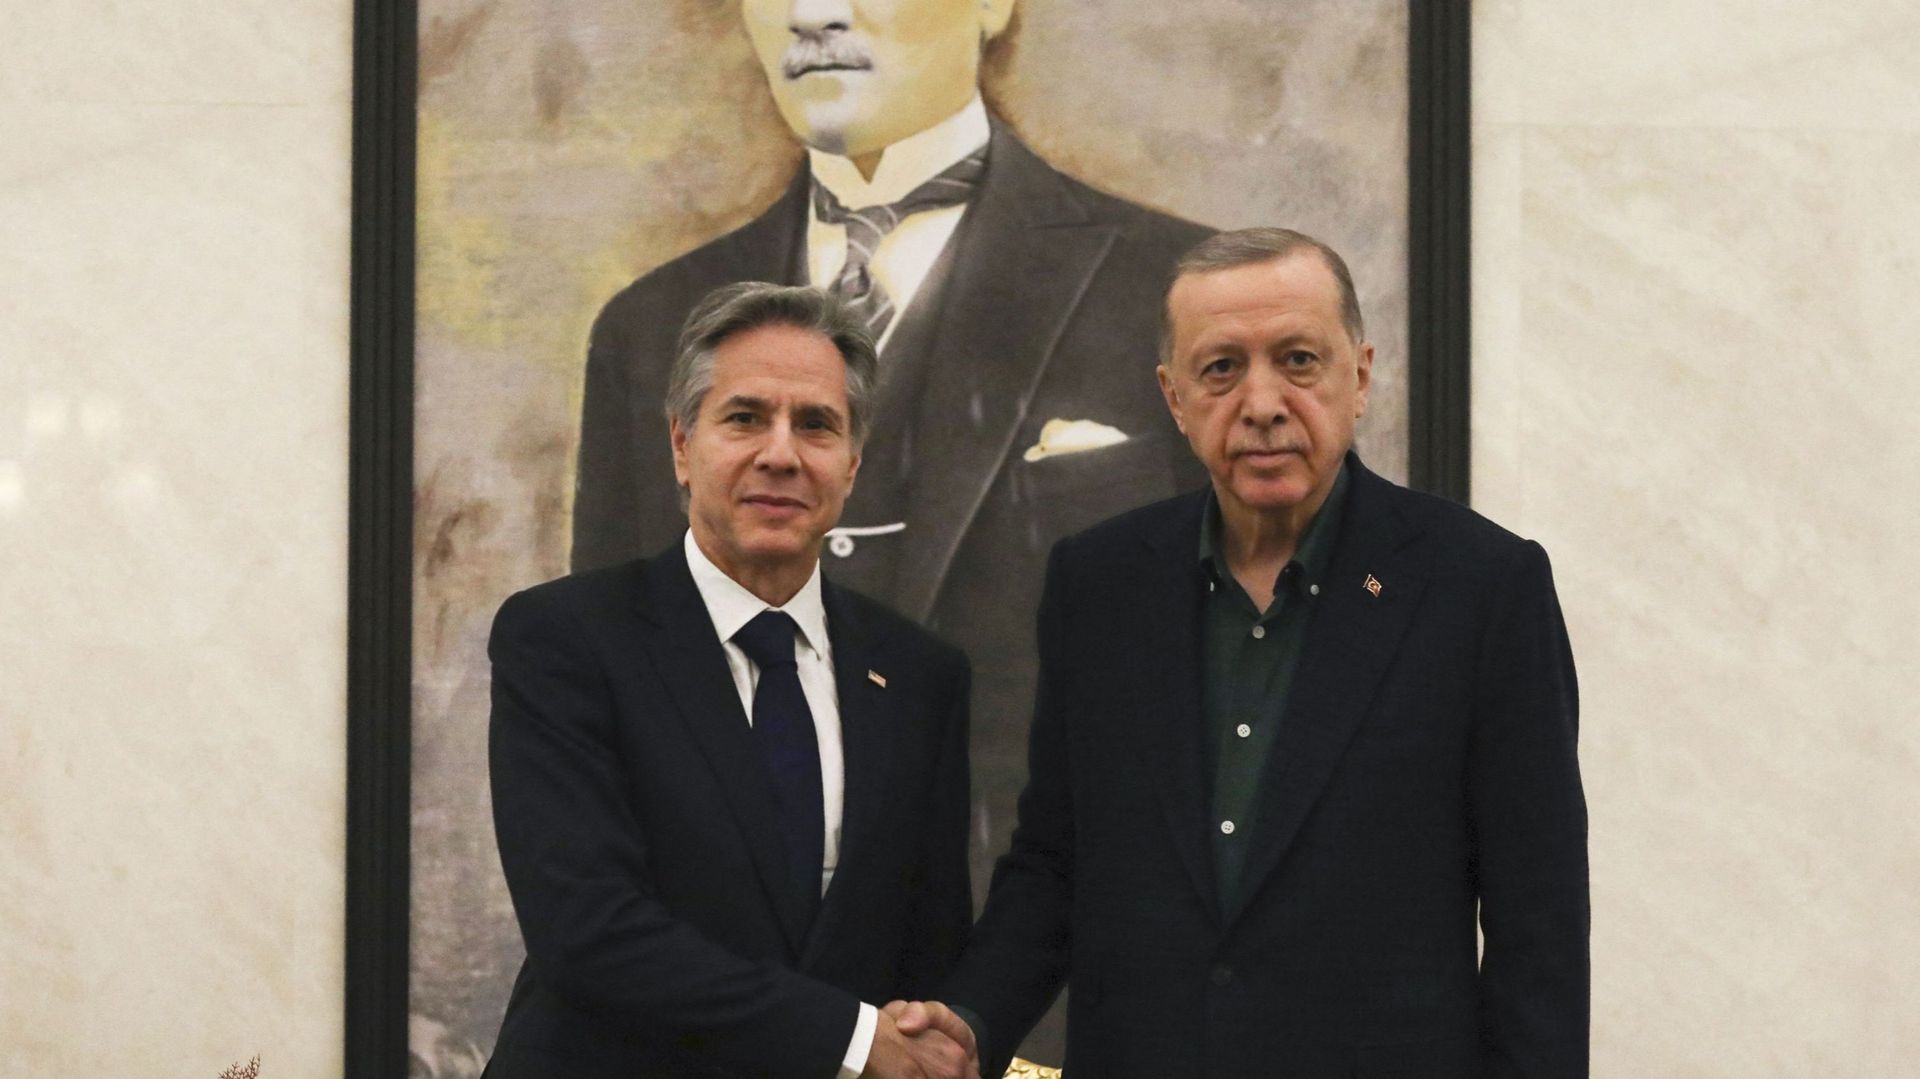 Le secrétaire d'État américain Antony Blinken serre la main du président turc Recep Tayyip Erdogan lors de leur rencontre à l'aéroport d'Esenboga à Ankara, le 20 février 2023.